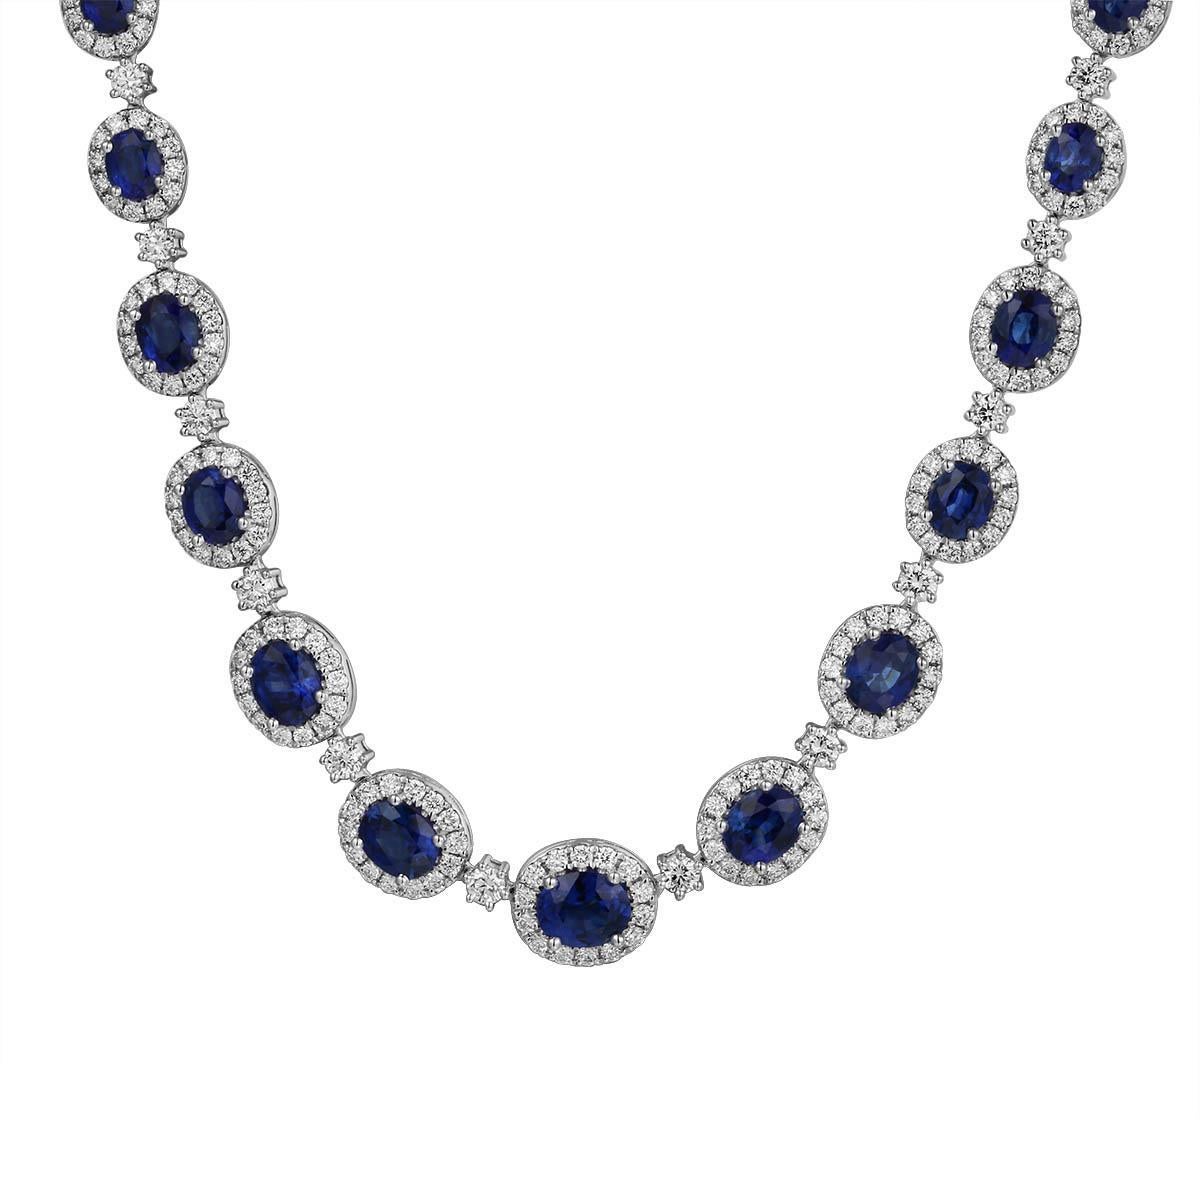 Verleihen Sie Ihrem Ensemble einen majestätischen Touch mit dieser atemberaubenden 10,14 Karat königsblauen Saphir-Diamant-Halskette! Diese auffällige Halskette zieht die Blicke auf sich, denn ihre schillernde Farbe und die exquisite Verarbeitung